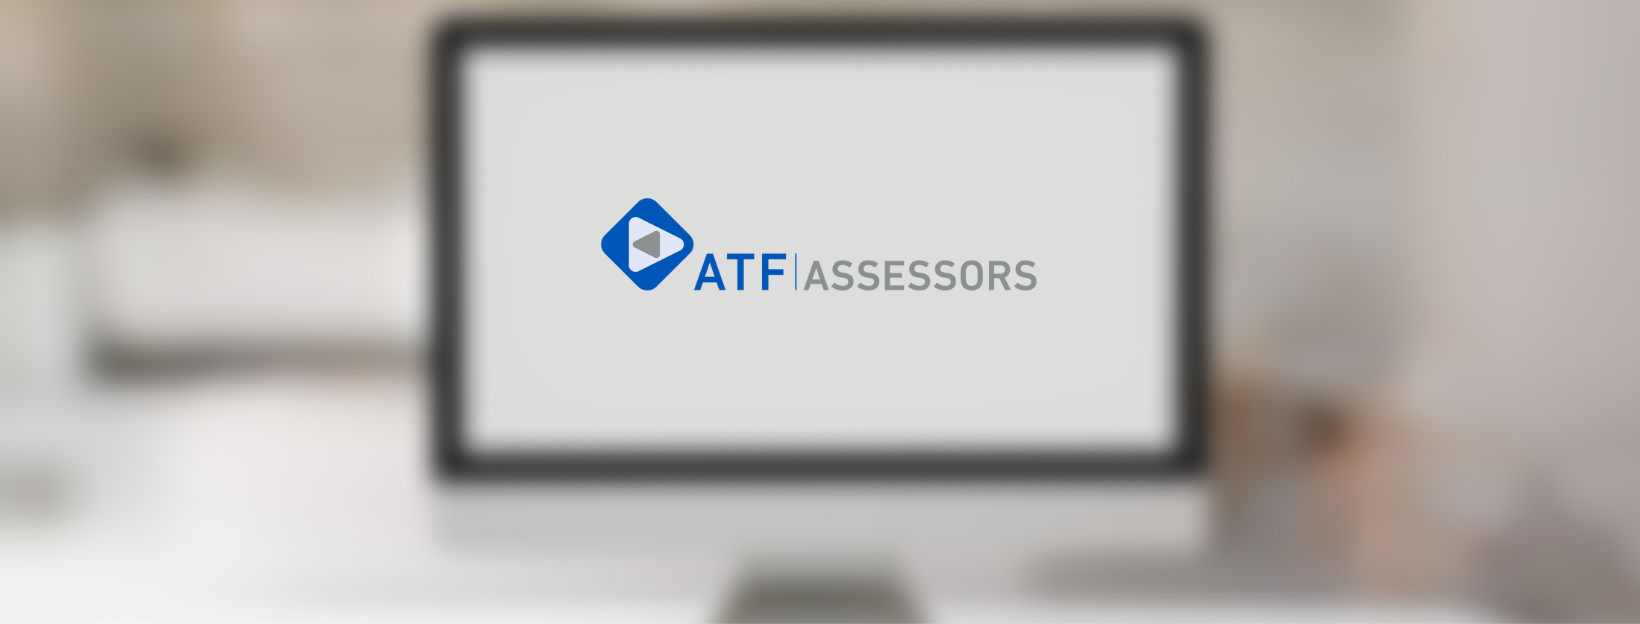 Nova pàgina web per ATF Assessors